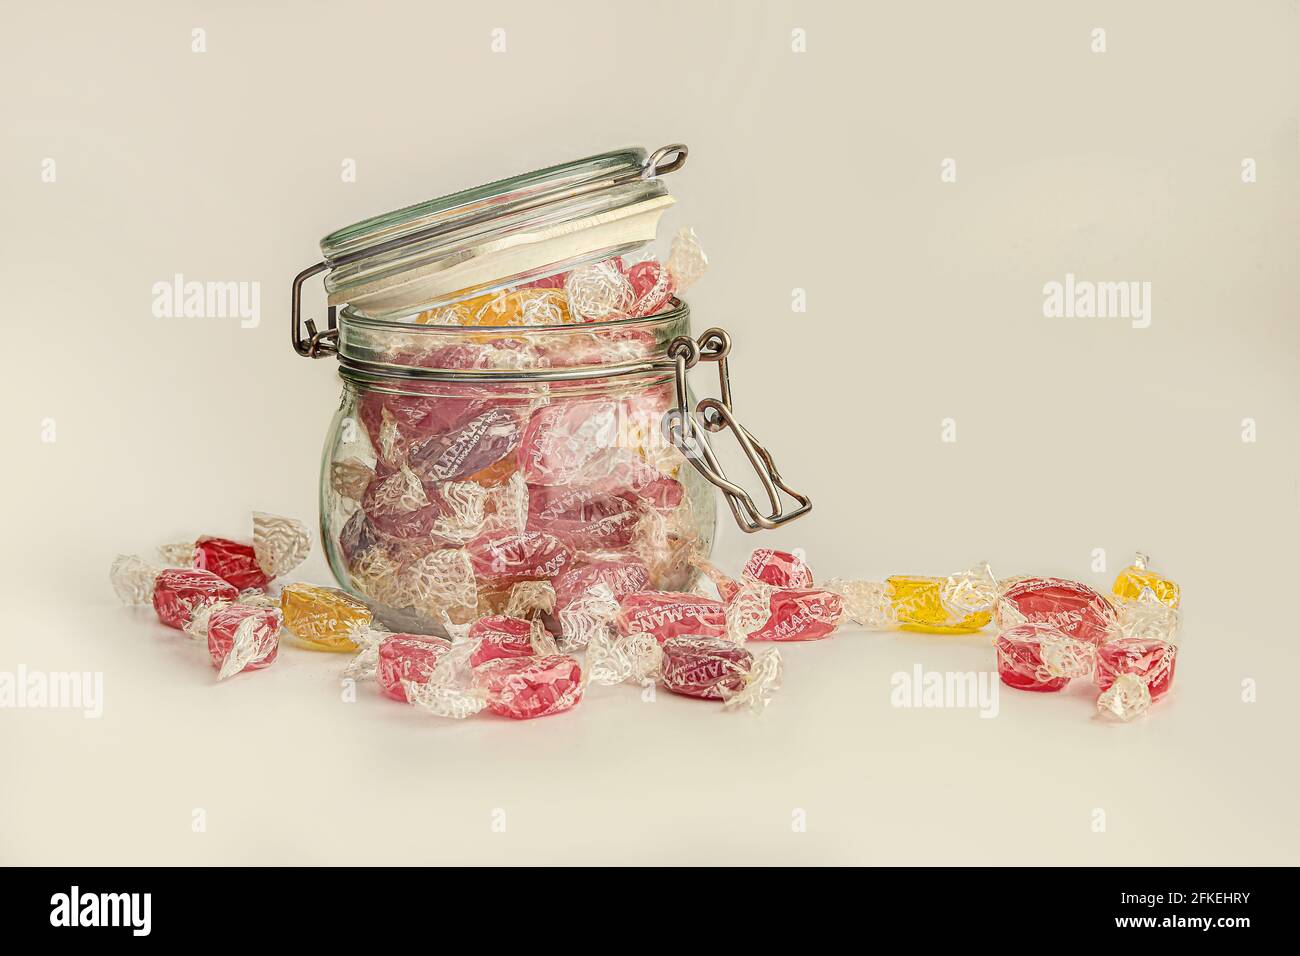 El tarro de Kilner llenó a desbordar con los dulces de la tos en un Fondo blanco Foto de stock